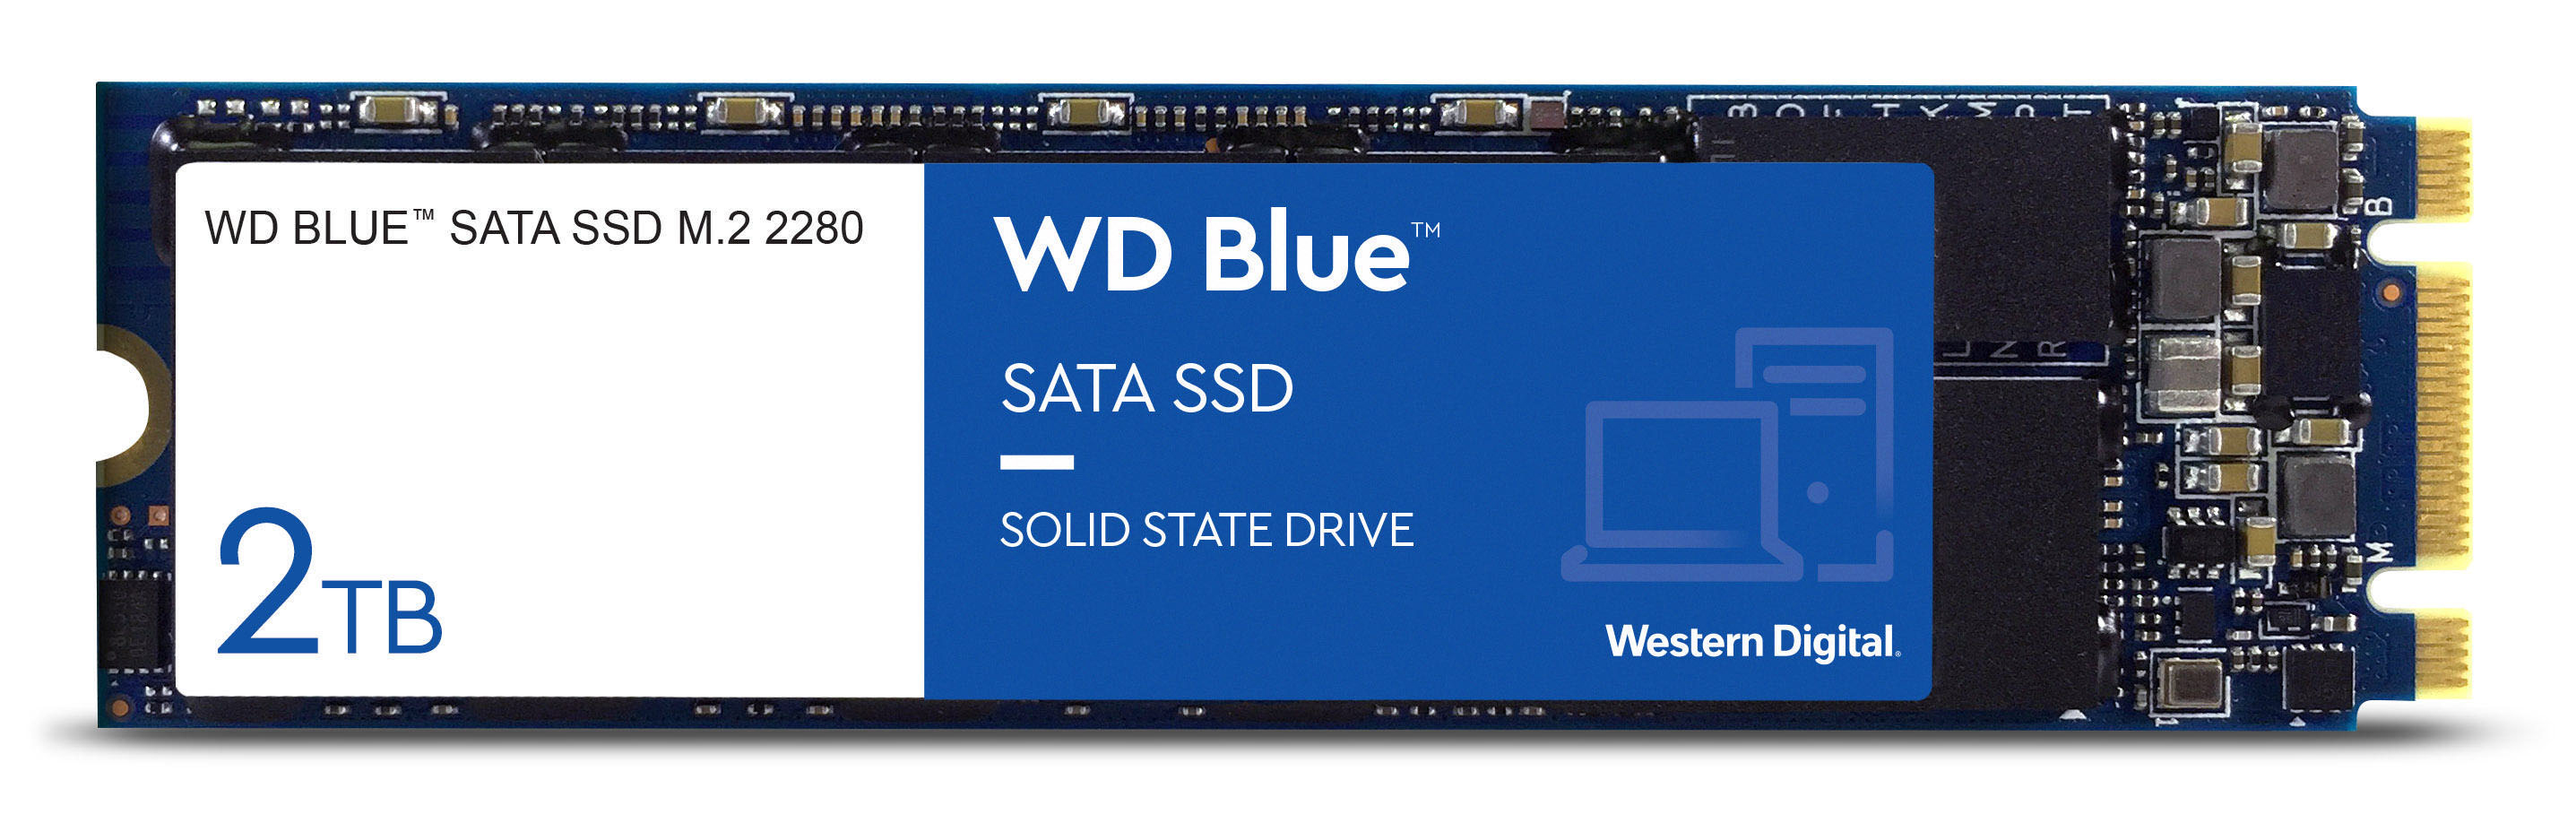 WDS200T2B0B via SSD, Flash SATA, TB 2 intern M.2 NAND Speicher, WD